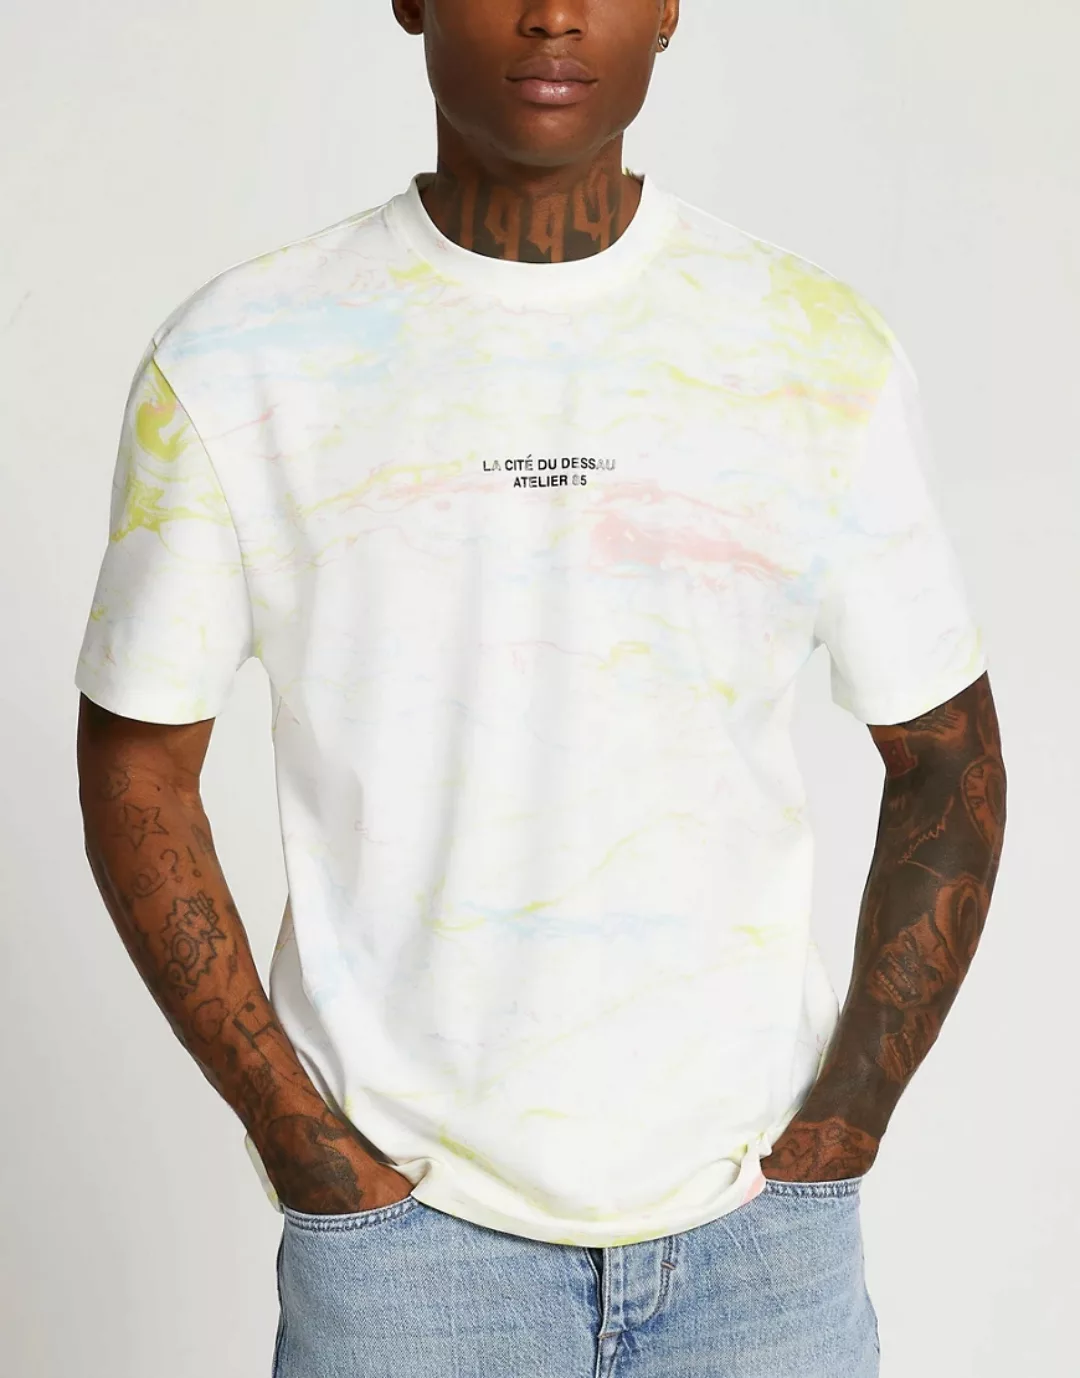 River Island – Regulär geschnittenes T-Shirt in Weiß mit marmorierter Optik günstig online kaufen